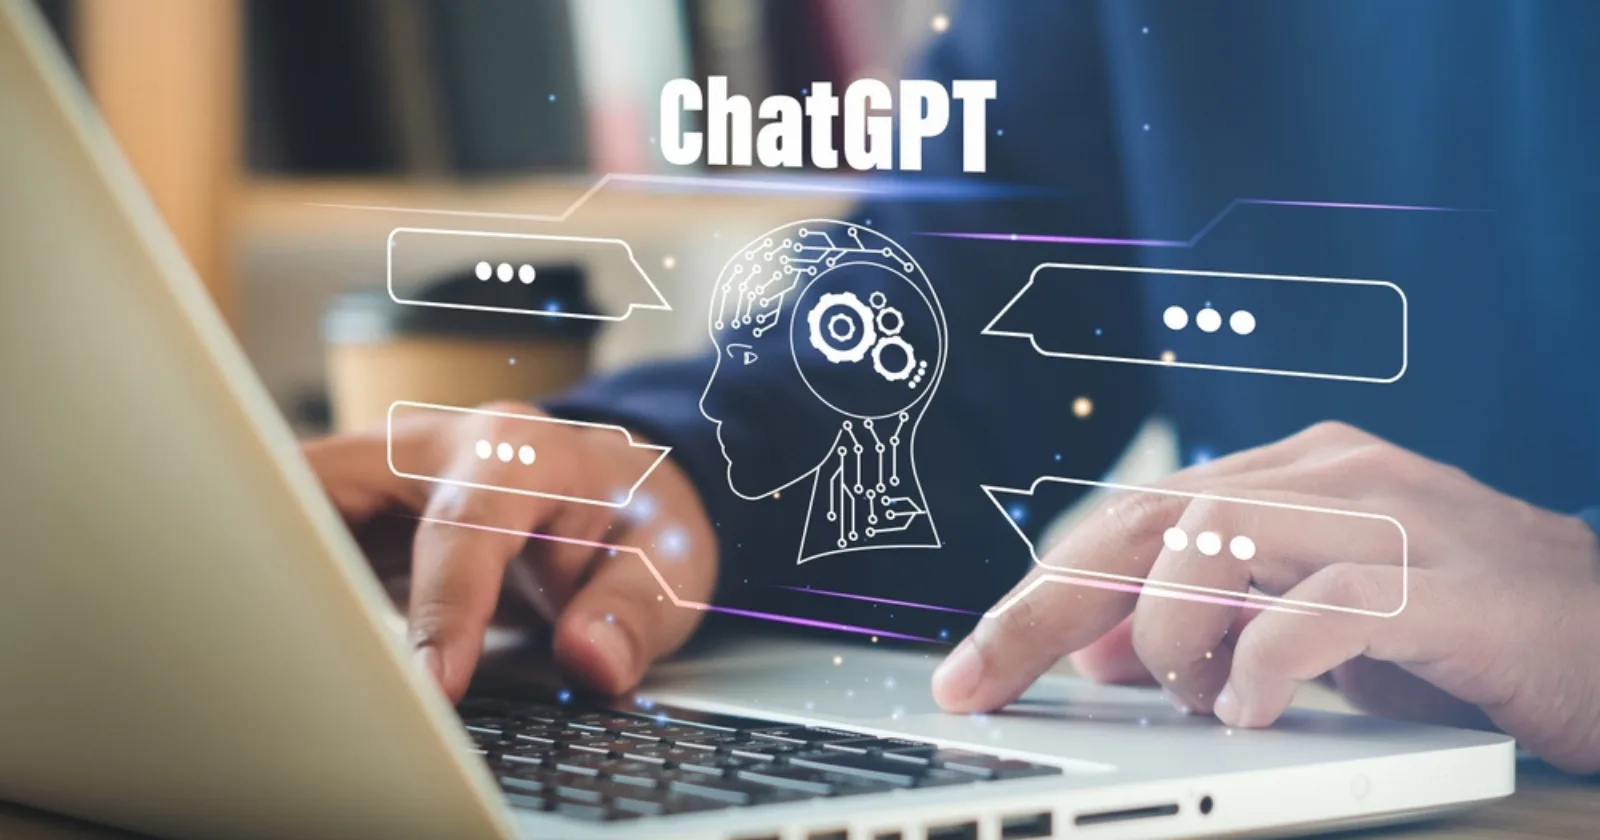 Khả năng giải toán của ChatGPT có được đánh giá cao không 1